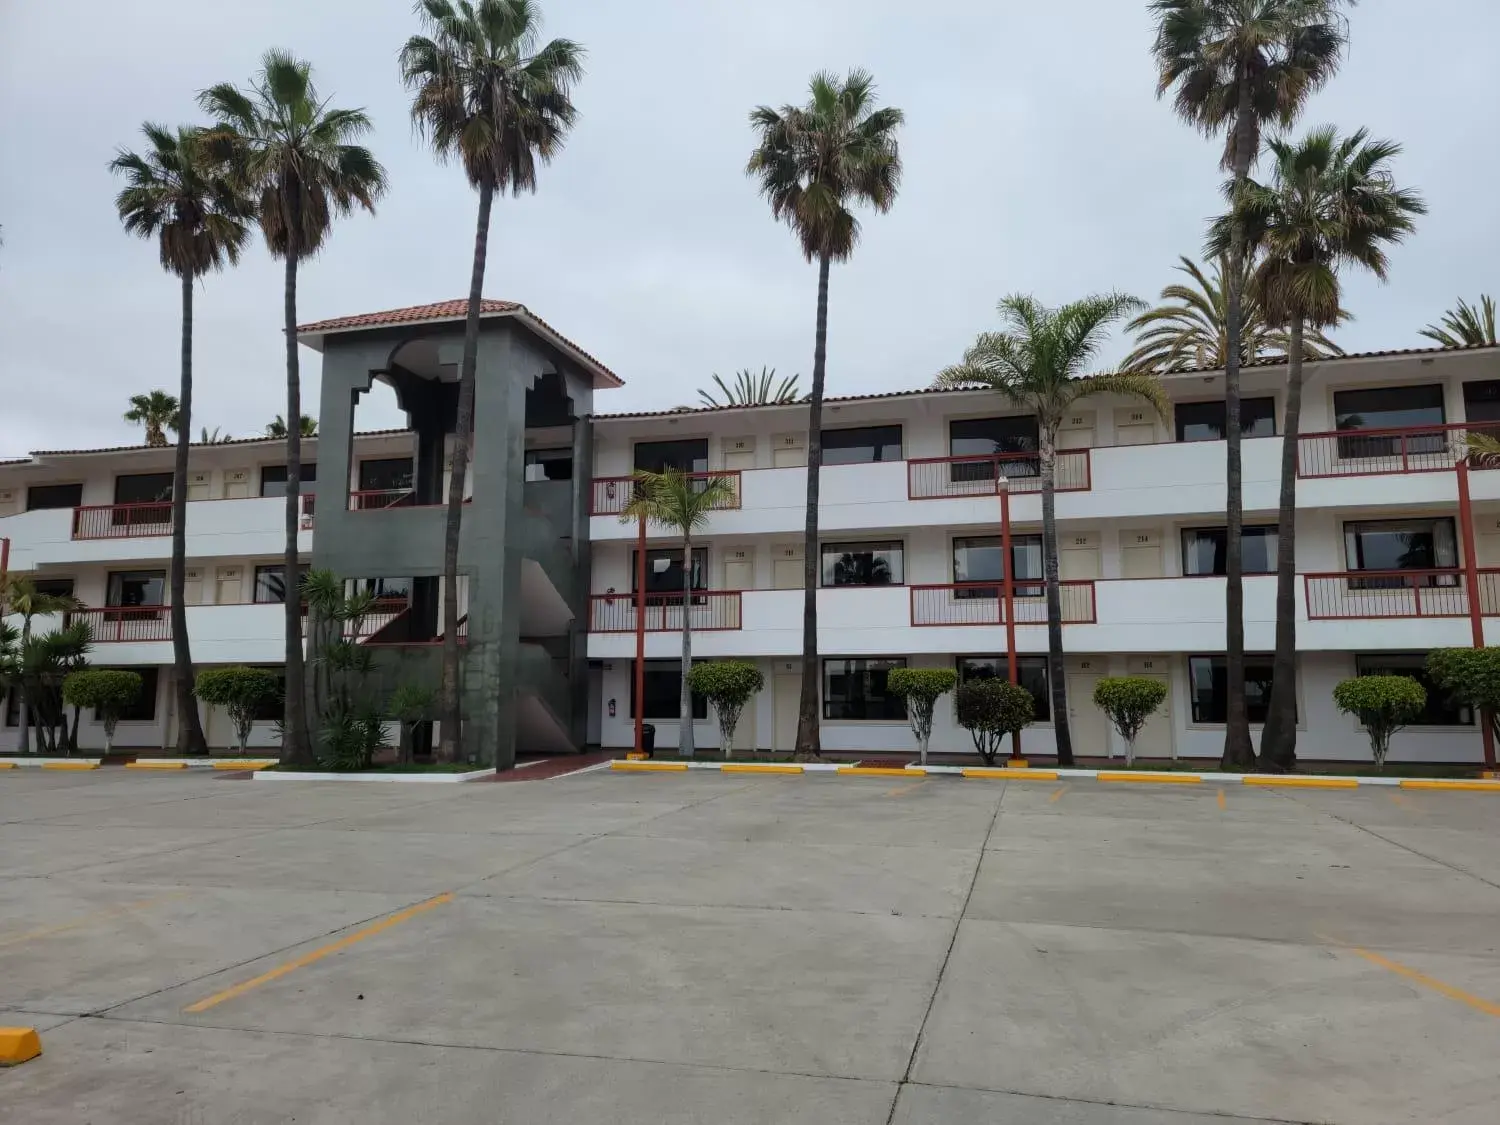 Off site, Property Building in Hotel Paraiso Las Palmas